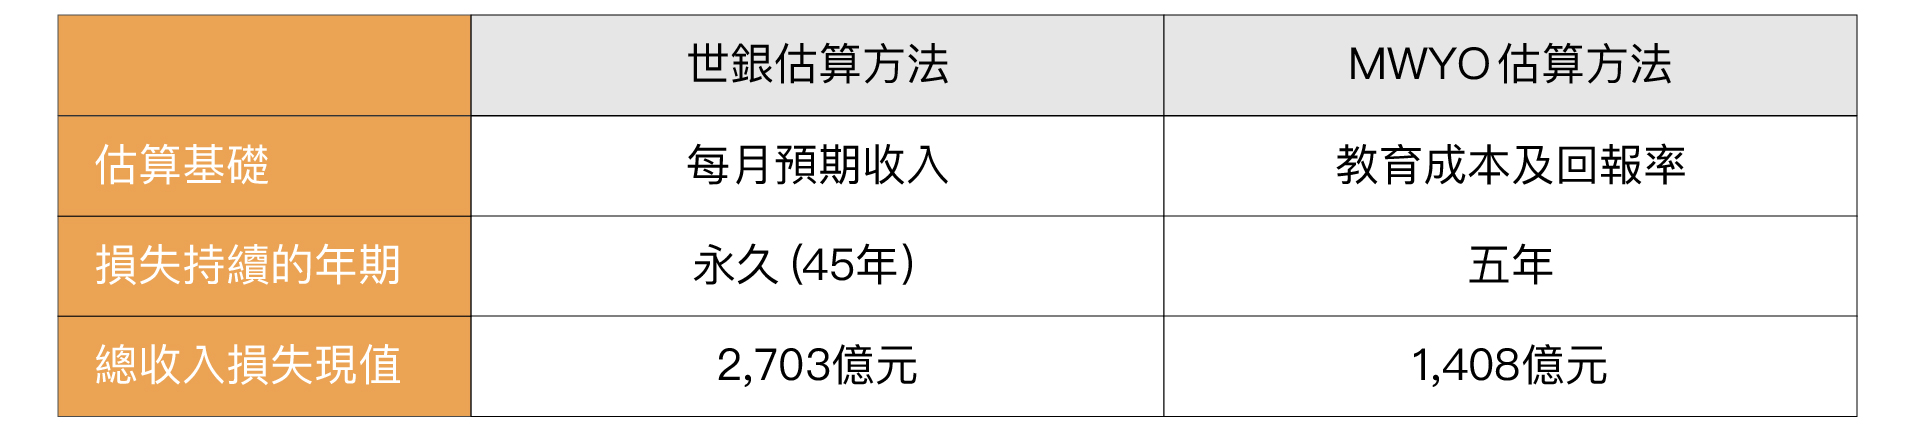 估計停課造成香港學生總收入損失